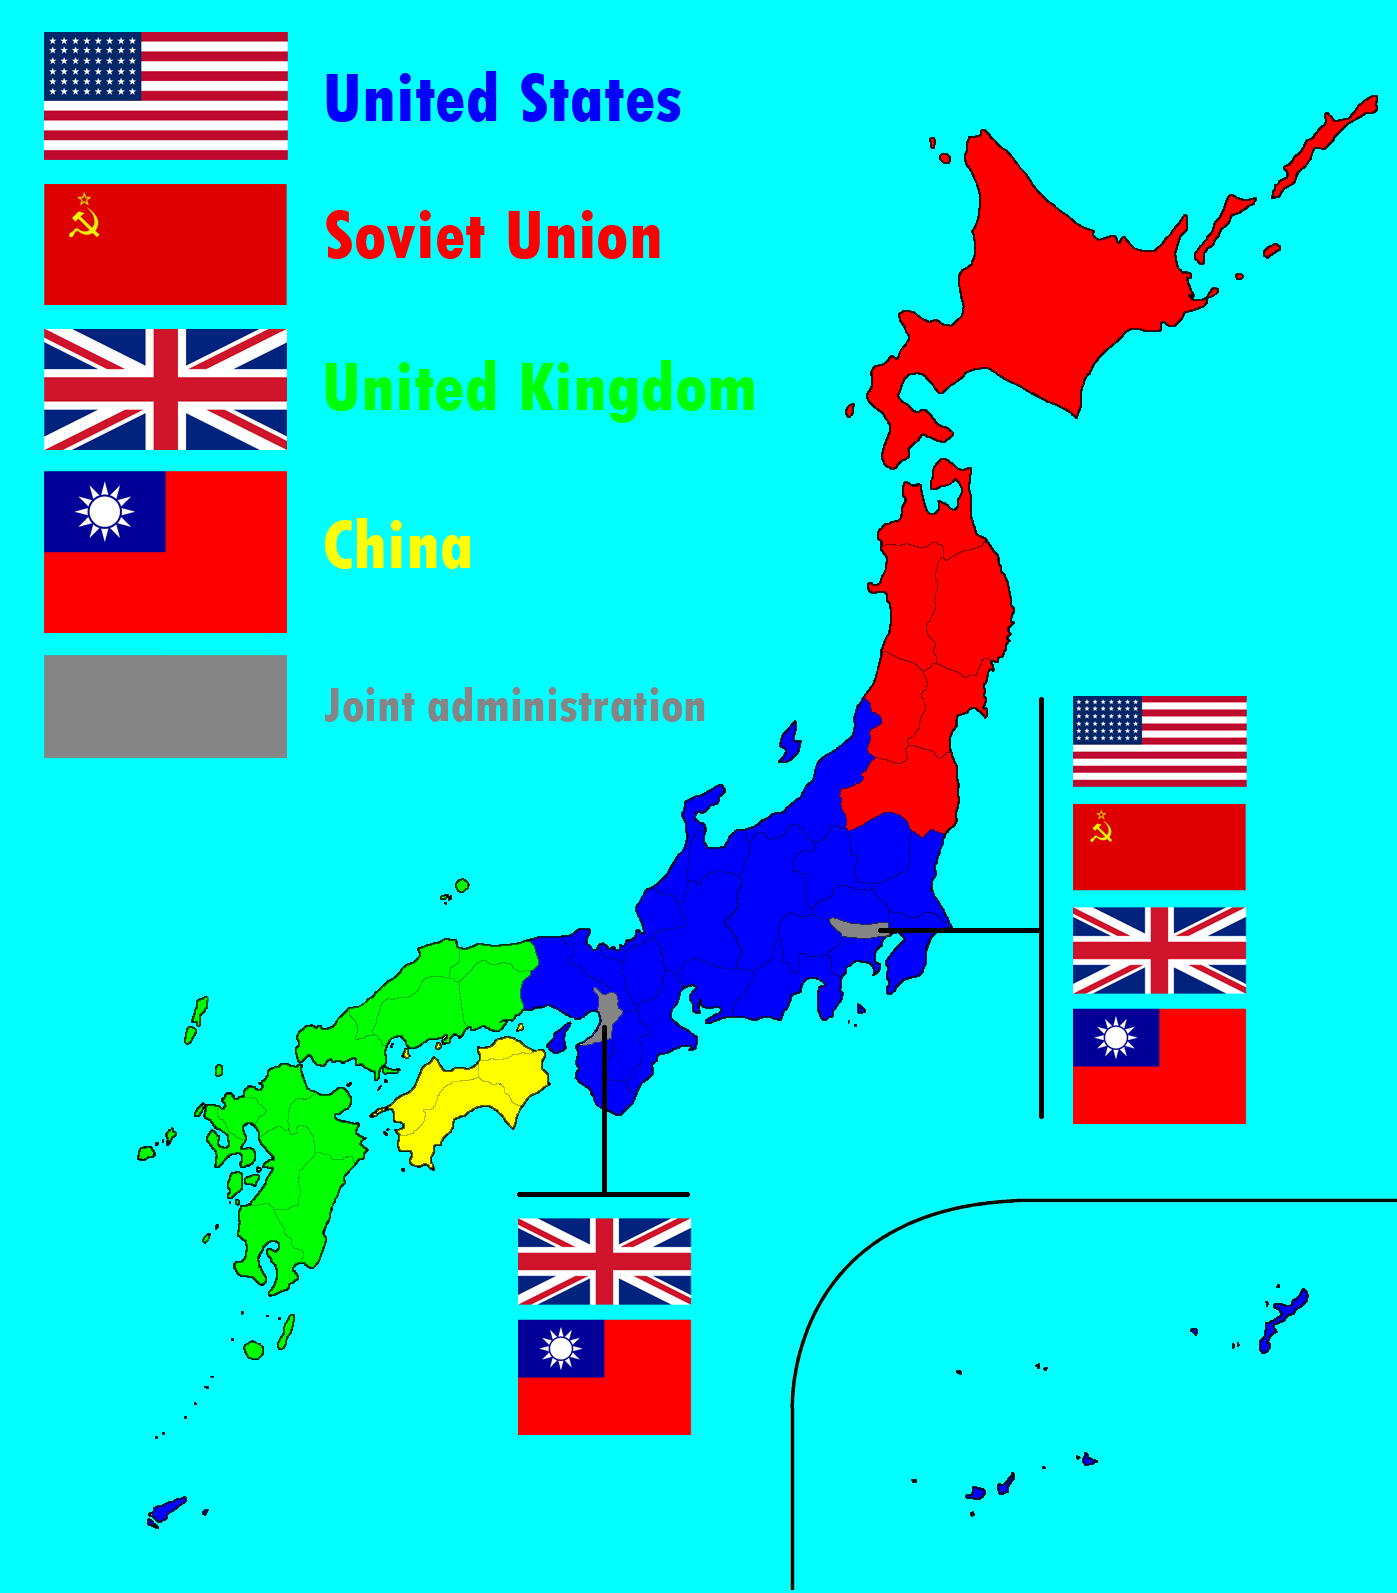 大日本帝国地图图片